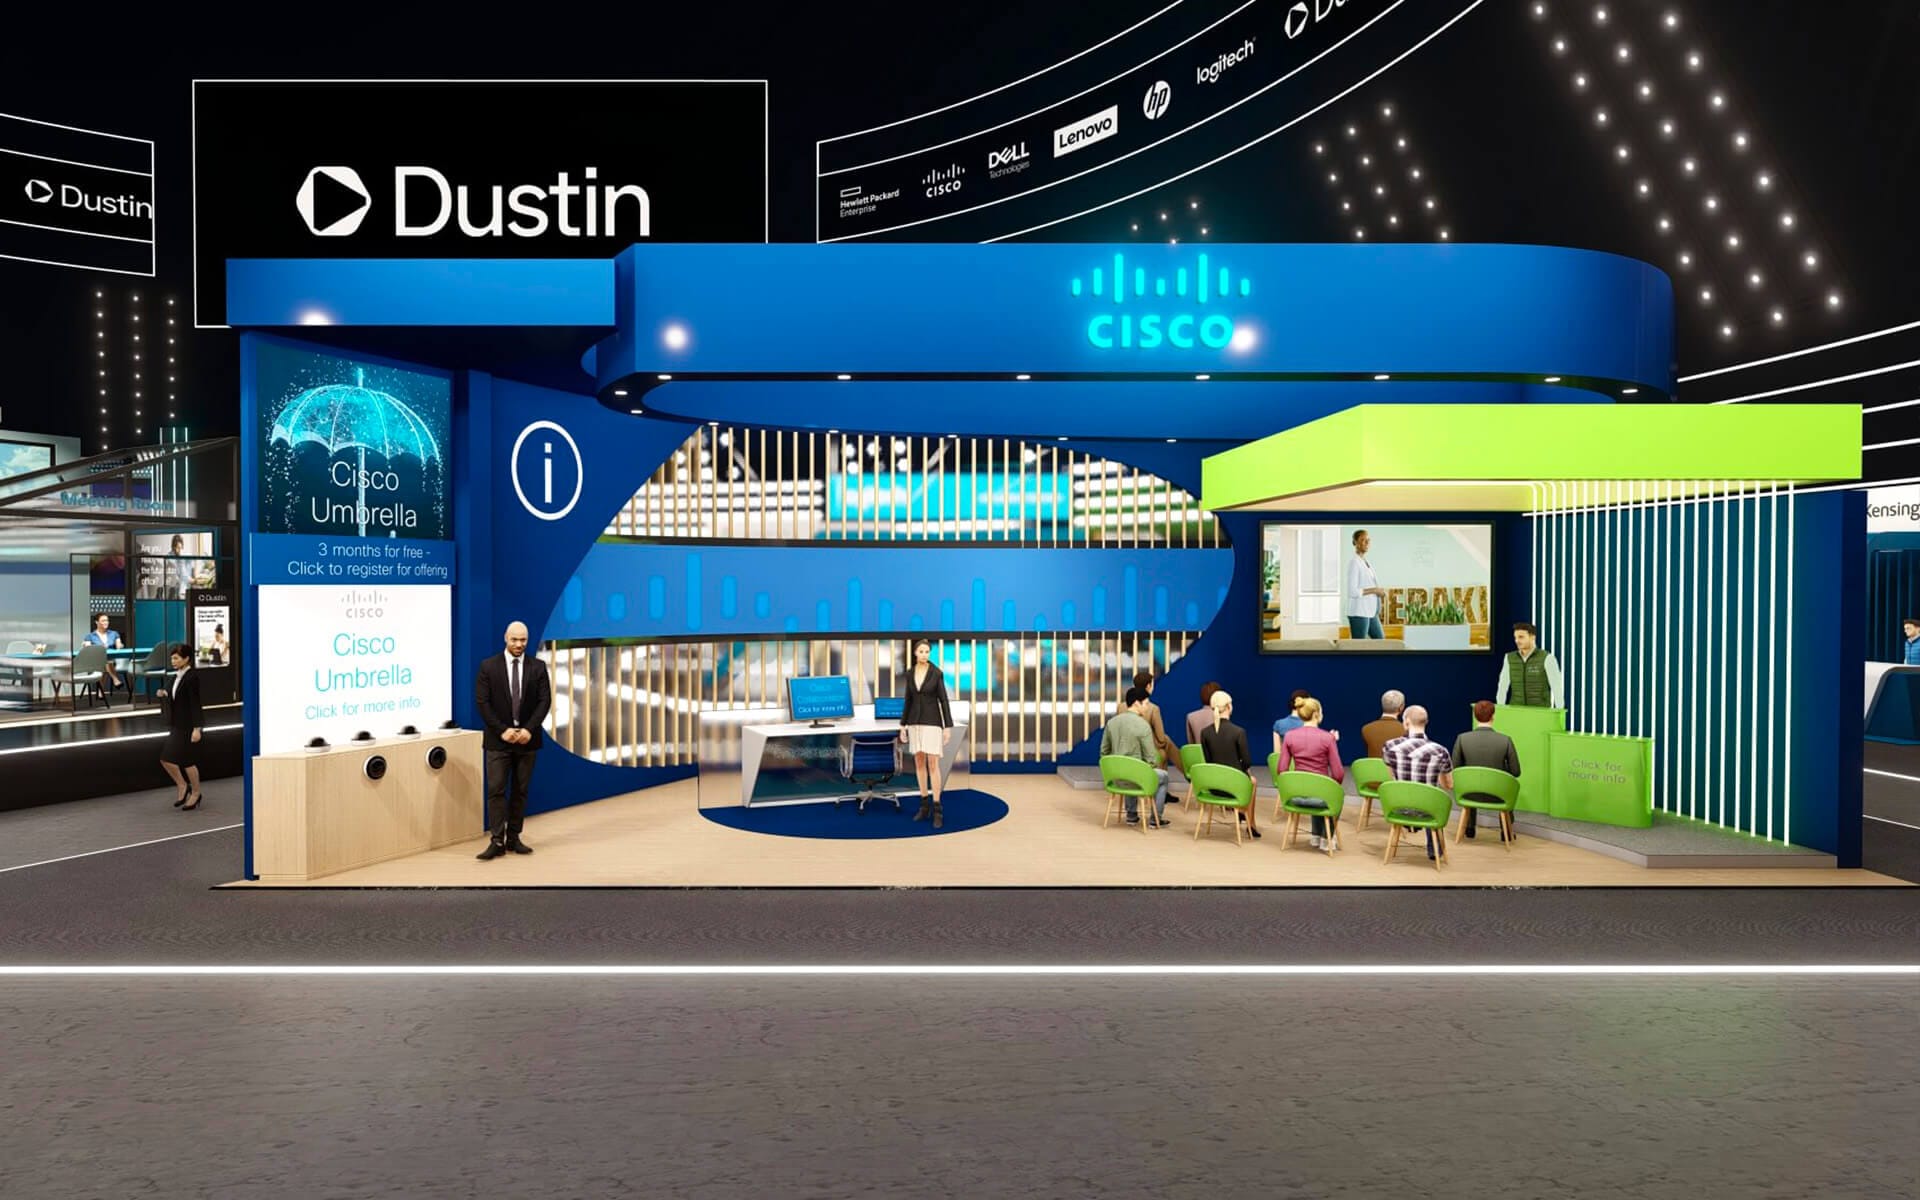 Virtuellt mässmonter för Cisco på det digitala eventet Dustin Expo Connected 2021